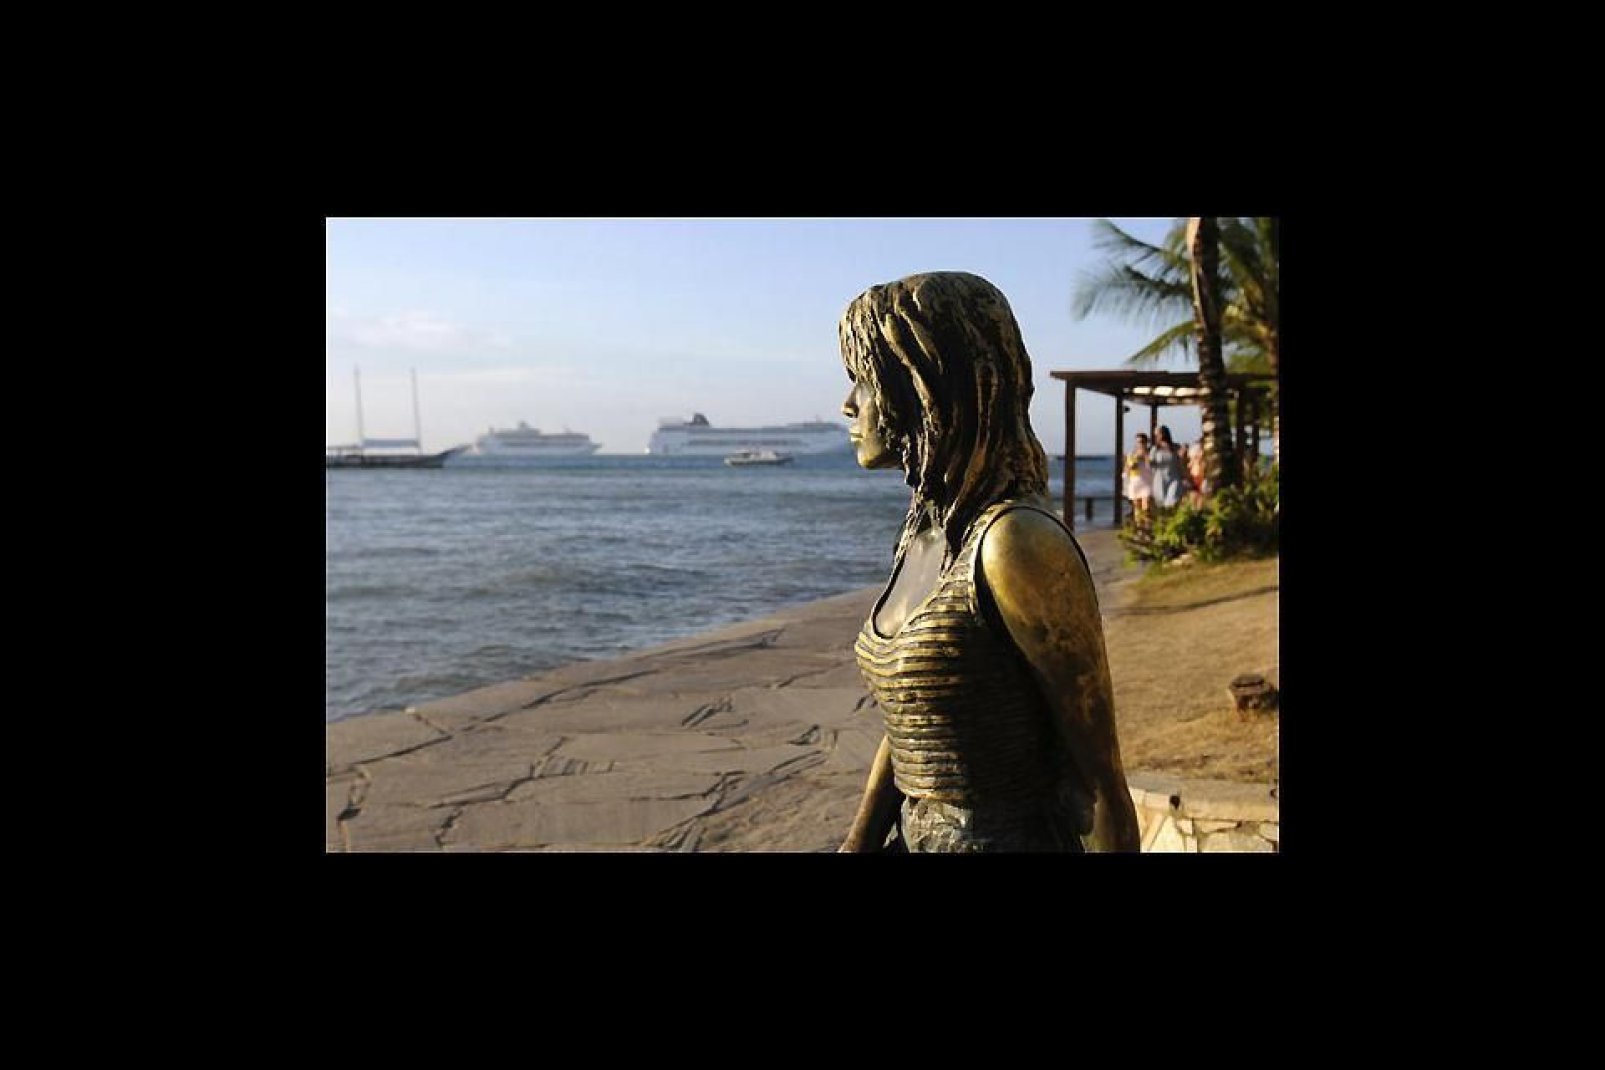 Les touristes se pressent à la Orla Bardot pour se faire photographier en compagnie de la statue de bronze à l'effigie de Brigitte Bardot.